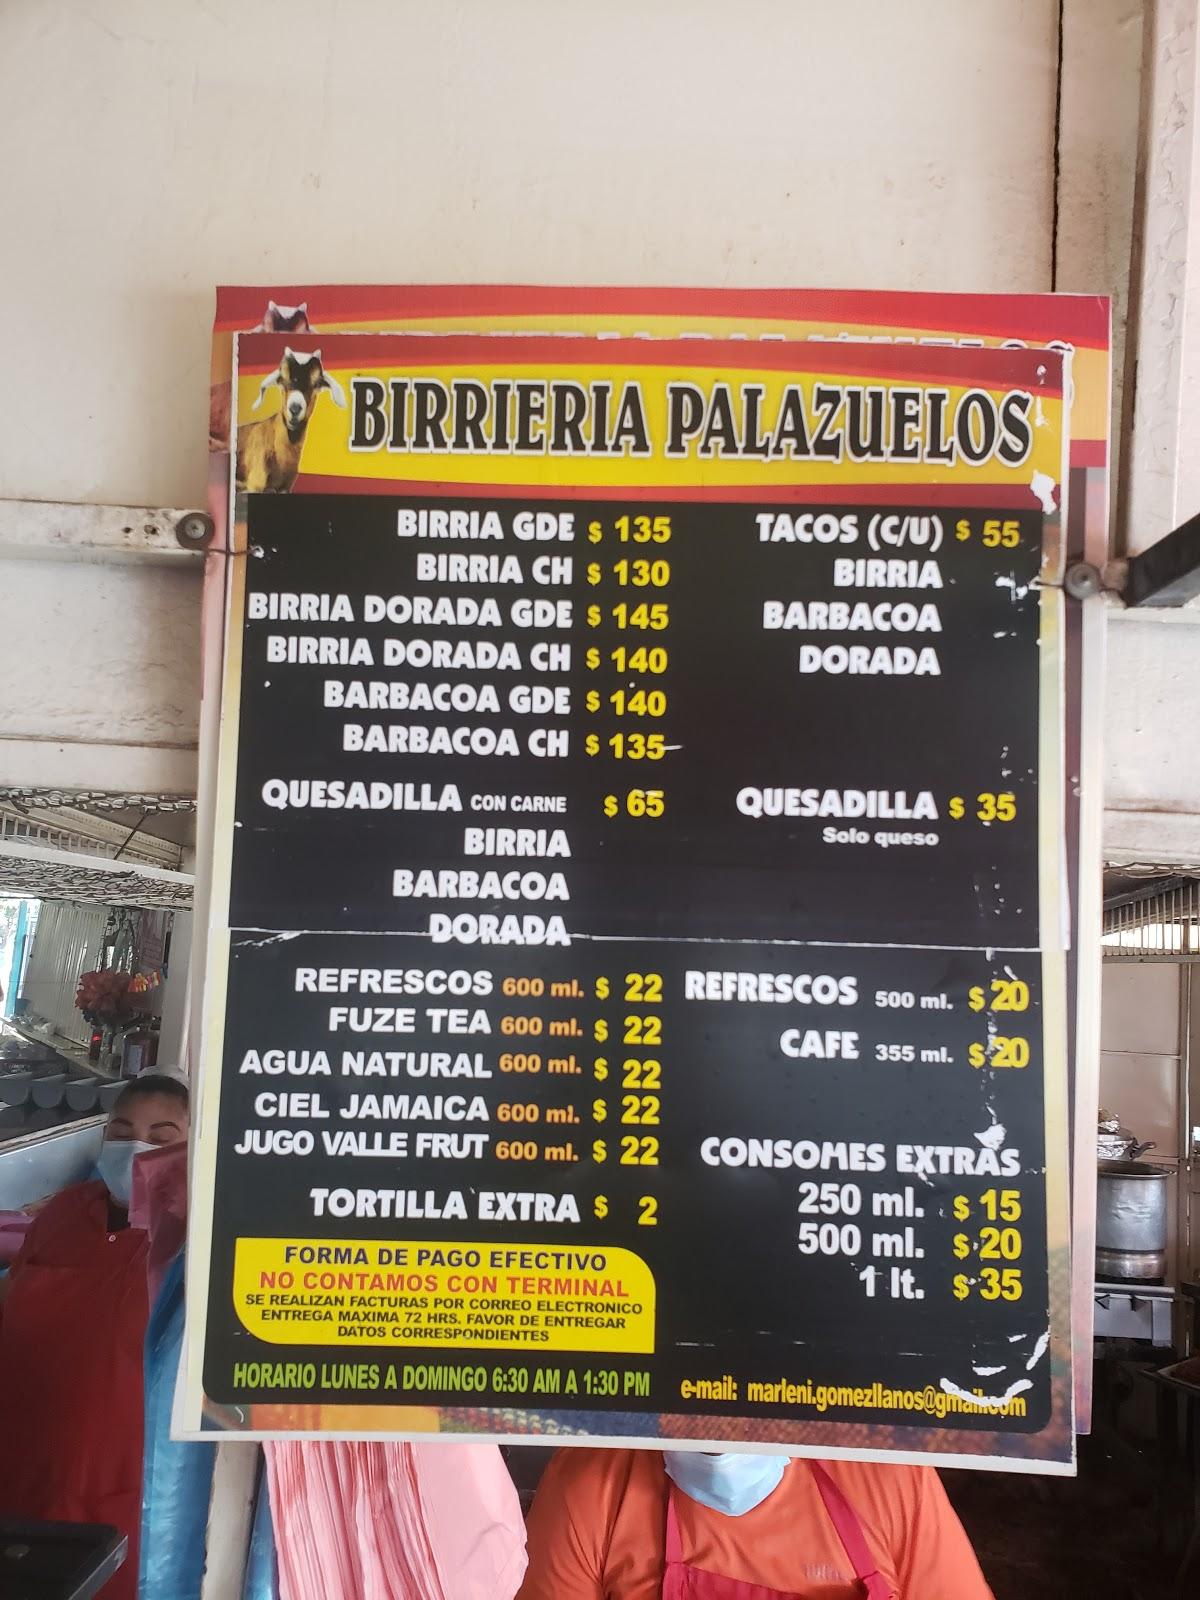 Menu at Birriería Palazuelos restaurant, Culiacán